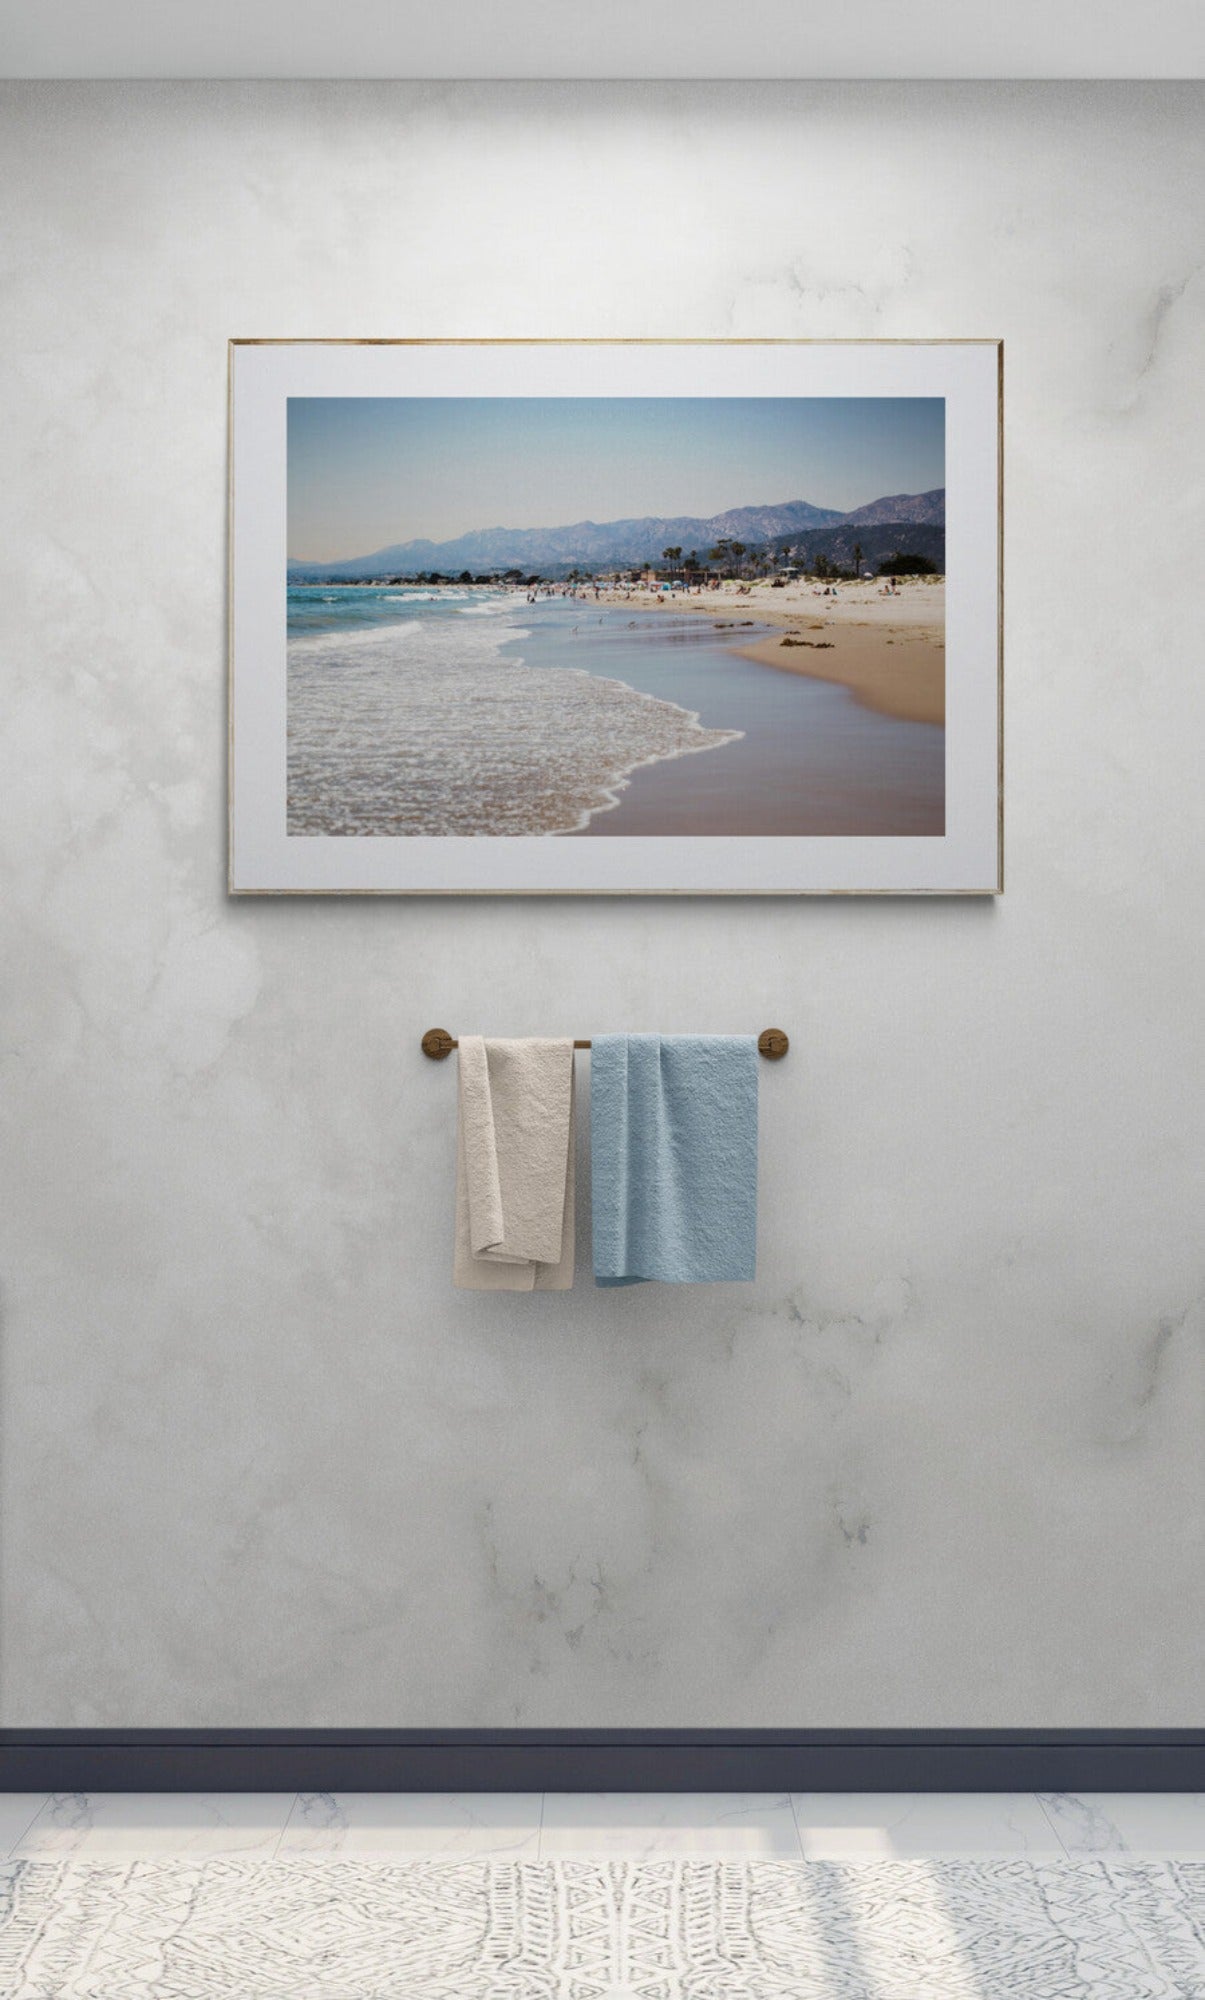 Carpinteria Beach Photograph in a bathroom as wall art